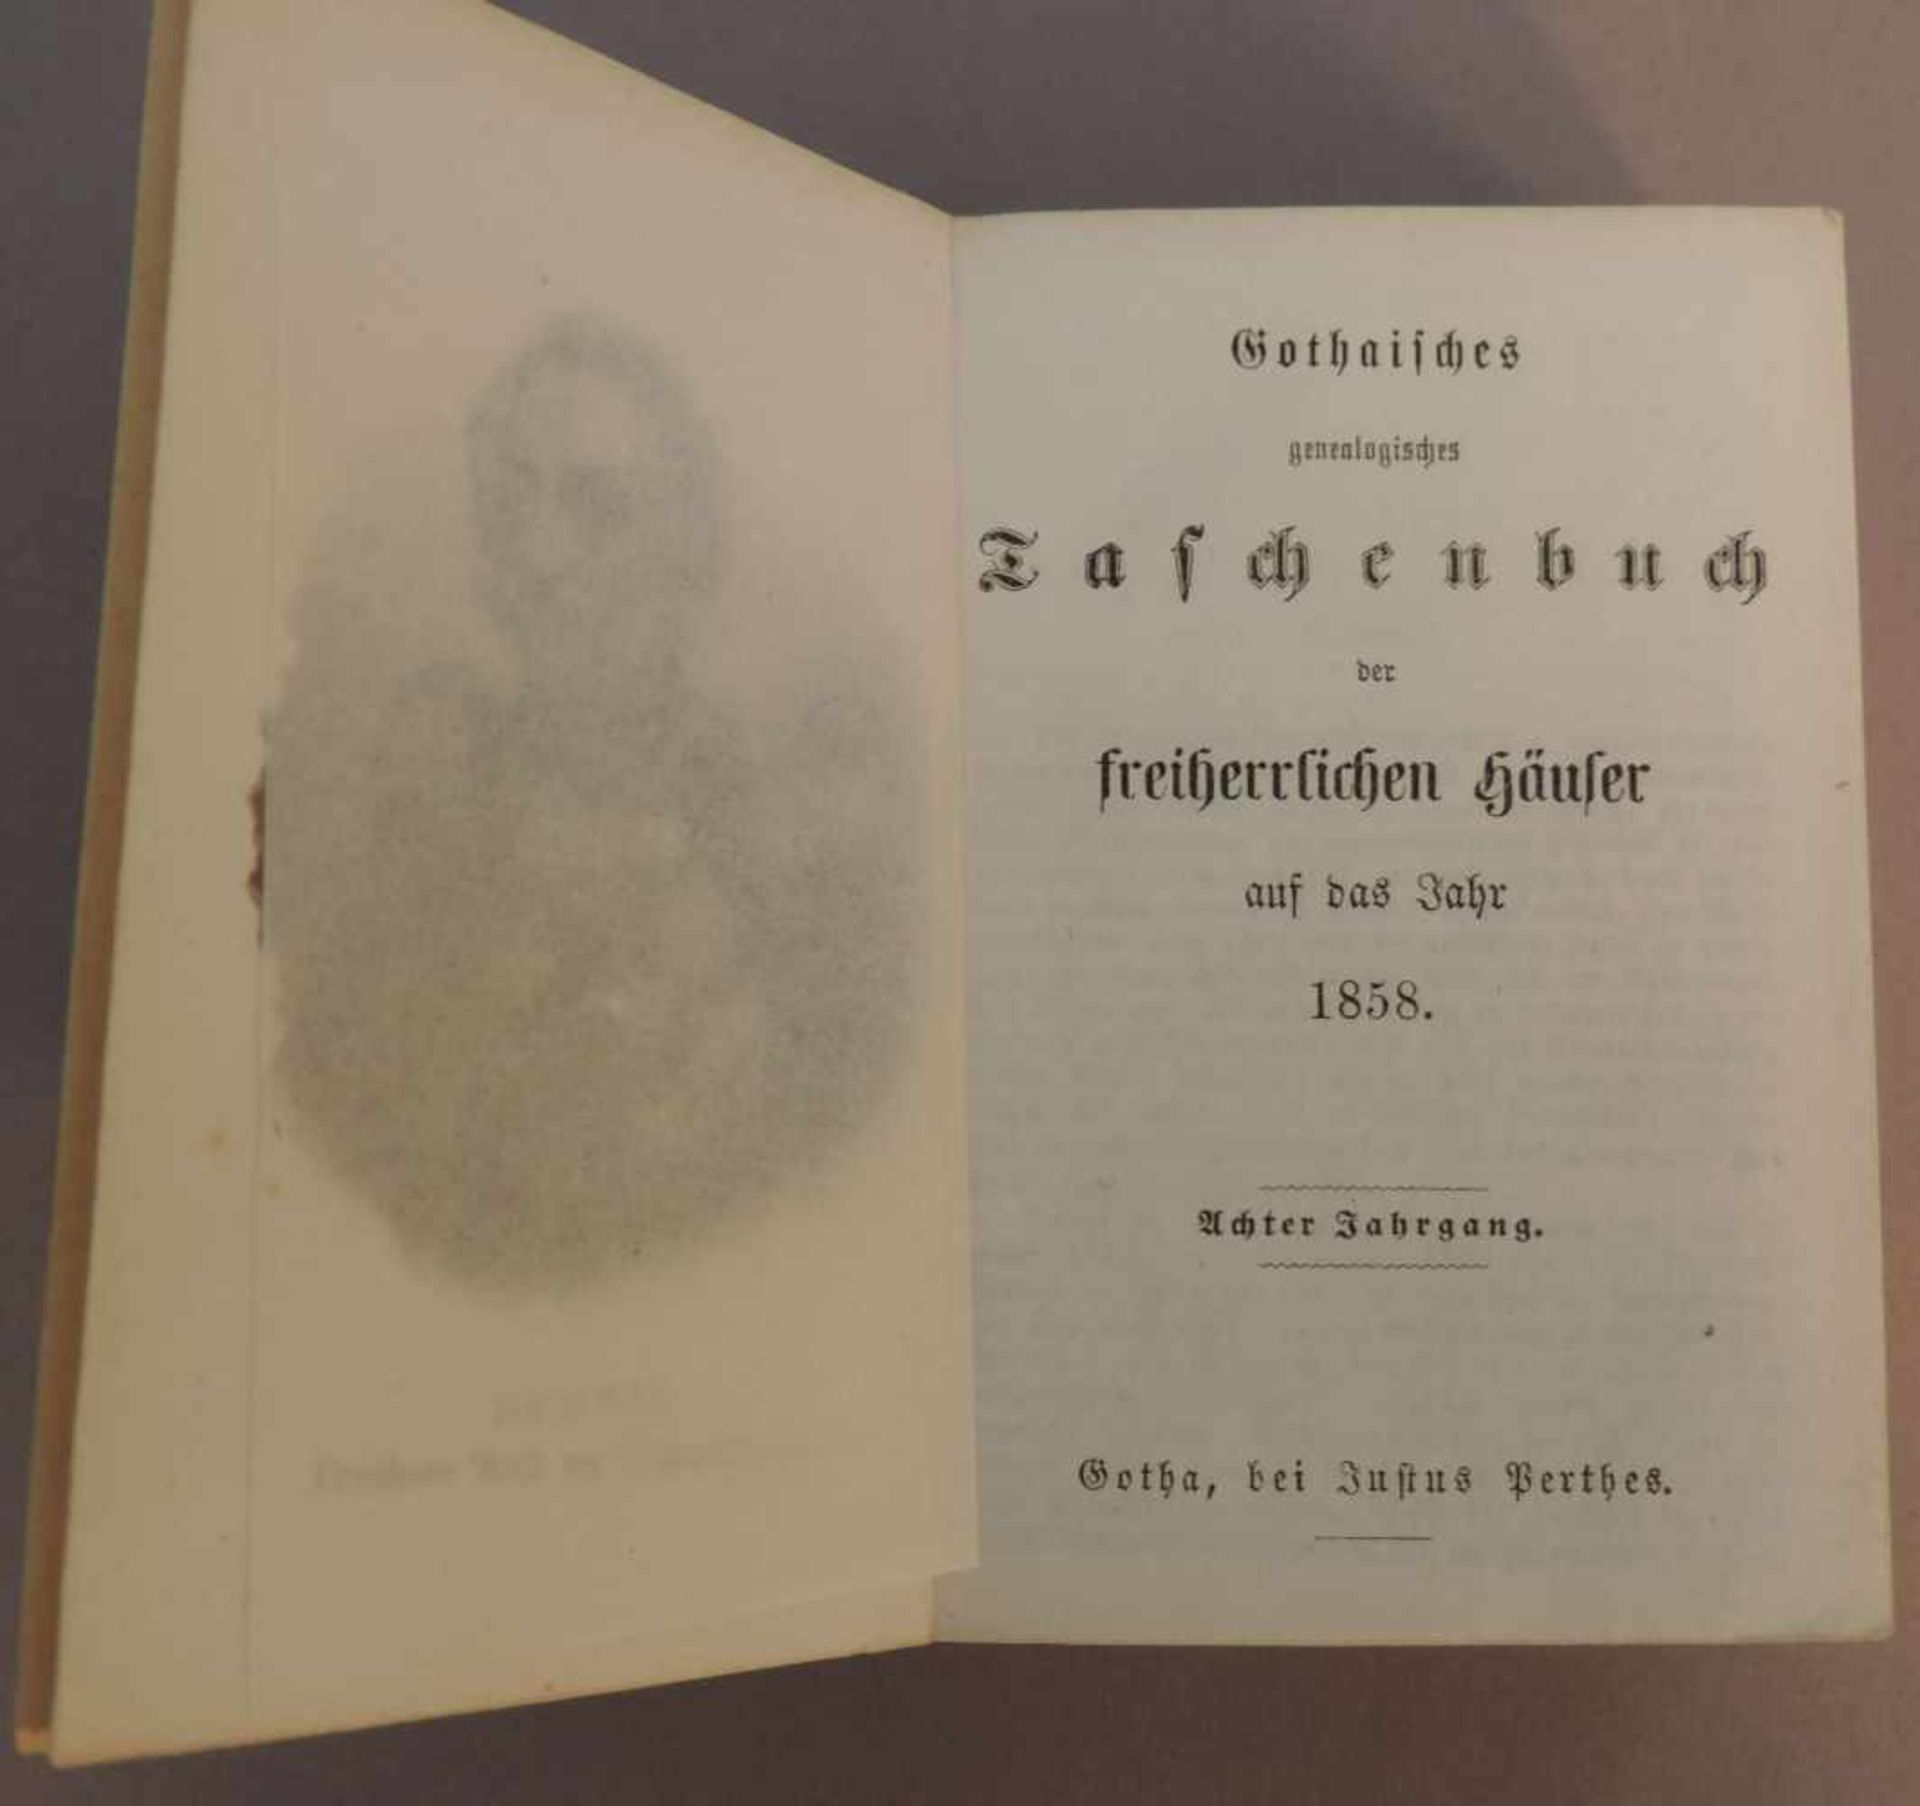 GOTHAISCHES Genealogisches Taschenbuch der Freiherrlichen Häuser 1858, 8. Jahrgang, Gotha,